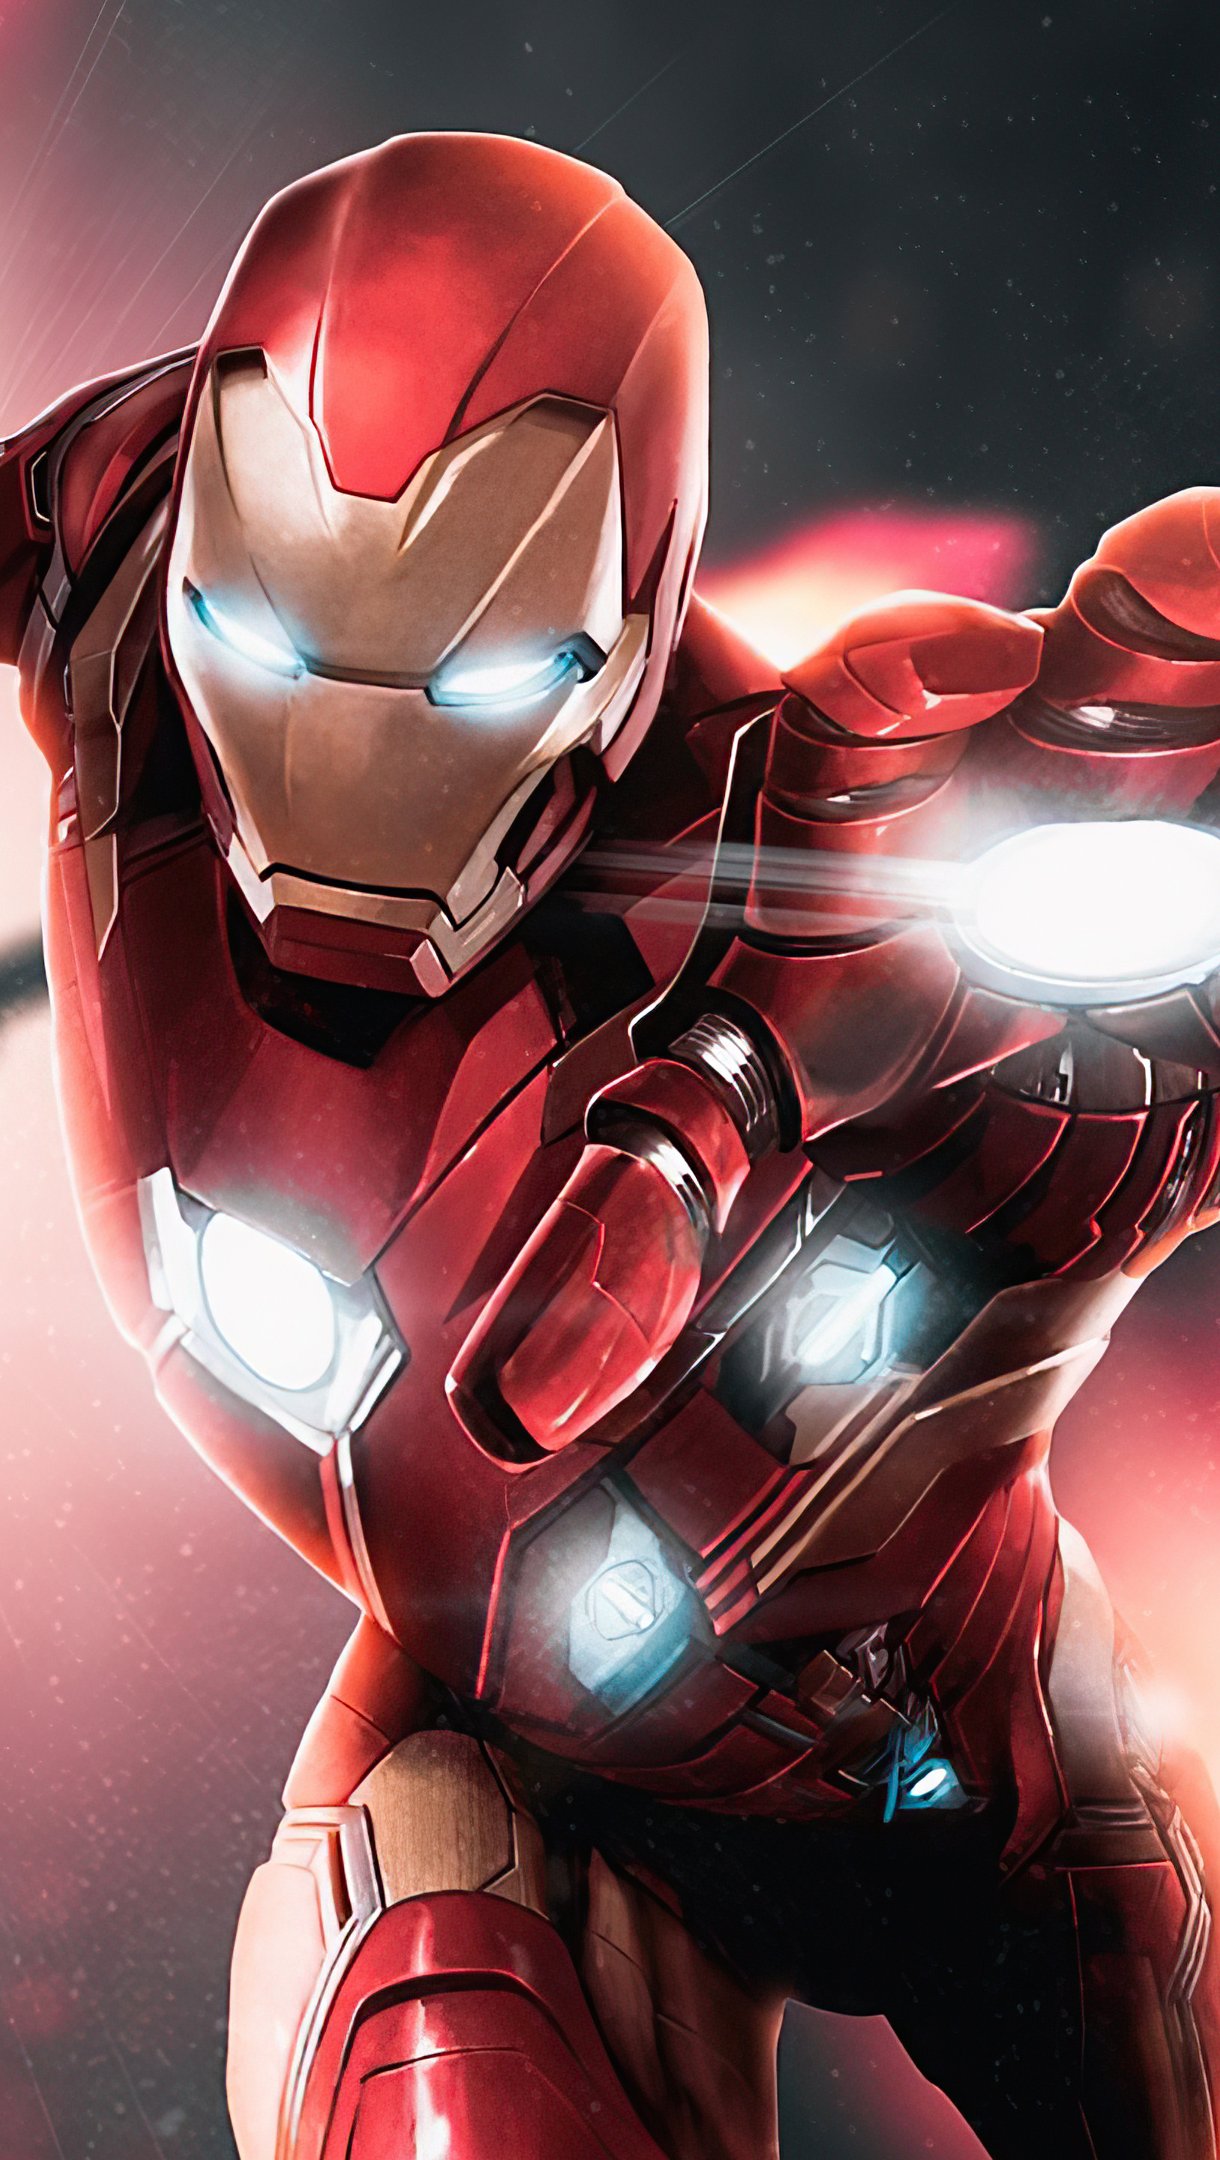 Iron Man 2020 Art Wallpaper 4k Ultra HD ID:6013